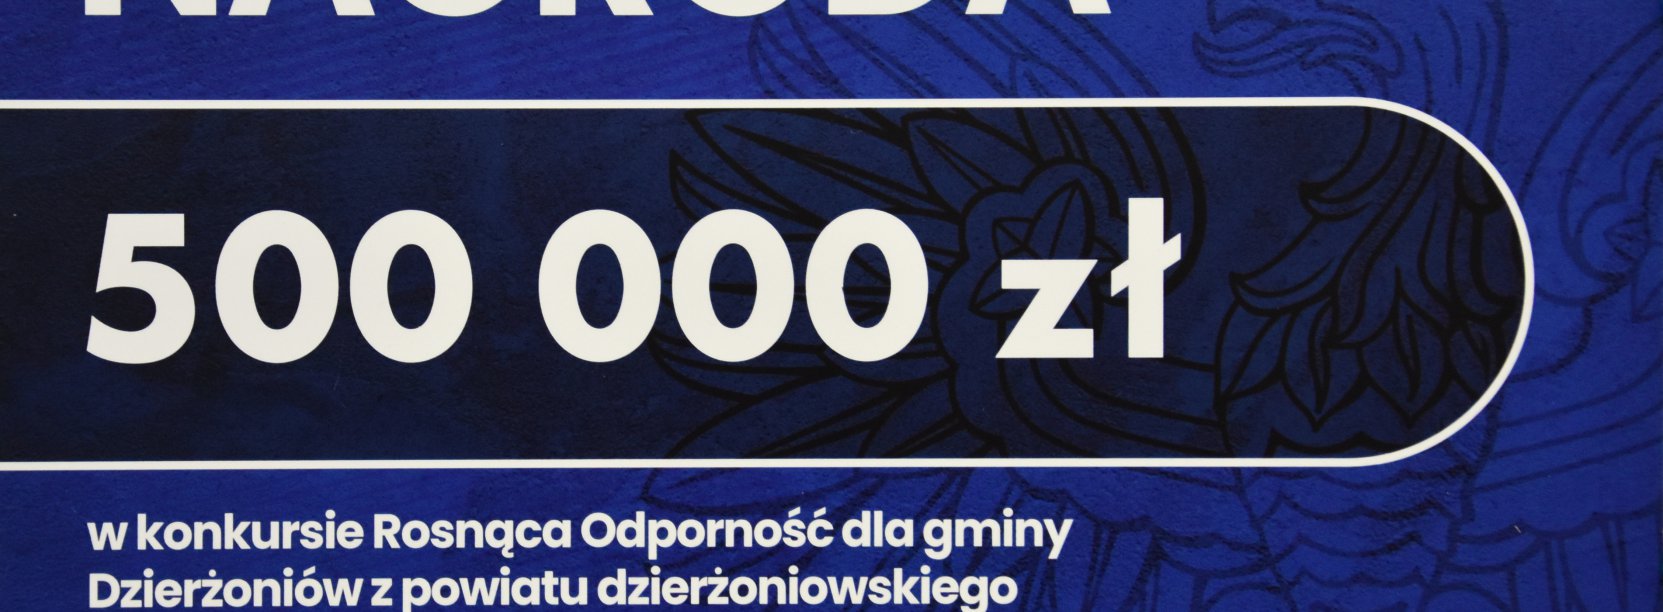 Napis na niebieskim tle "Nagroda 500 tys. zł"